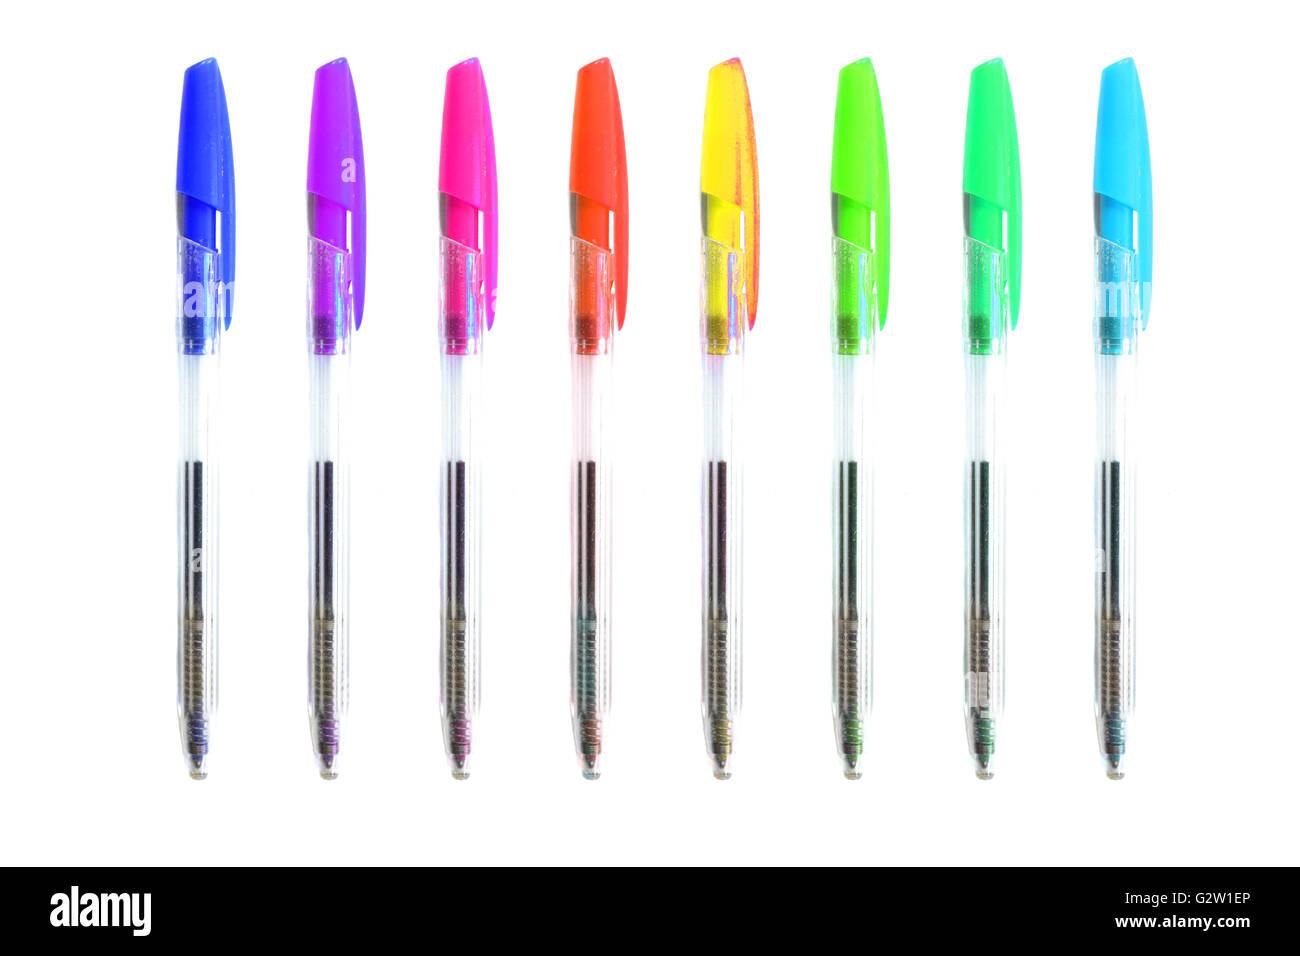 Les stylos colorés photographié sur un fond blanc. Banque D'Images